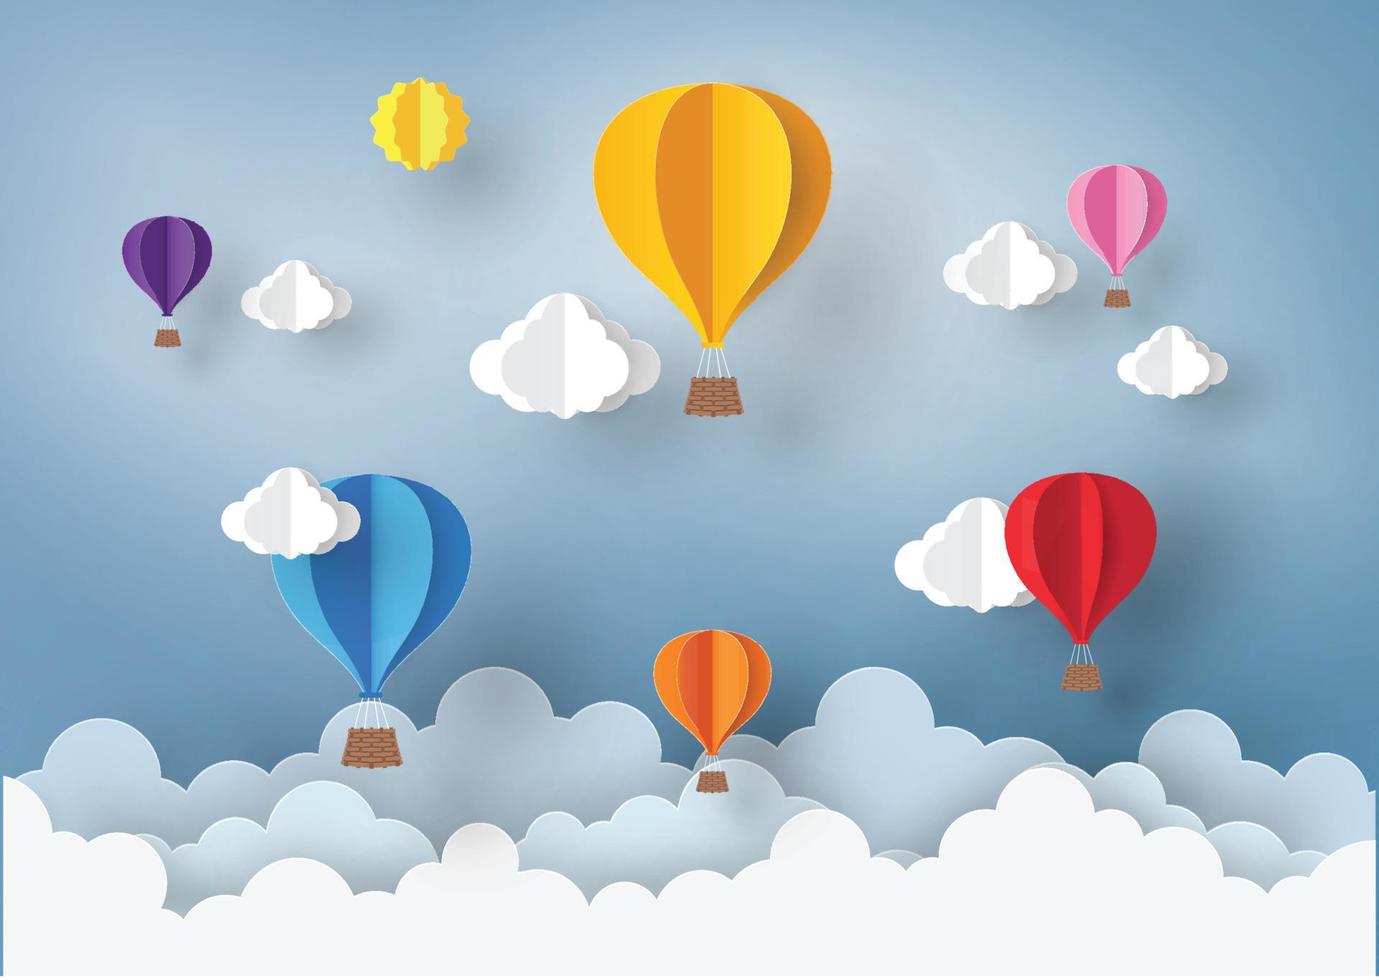 ballon und wolke im blauen himmel mit papierkunstdesign, vektorgestaltungselement und illustration vektor